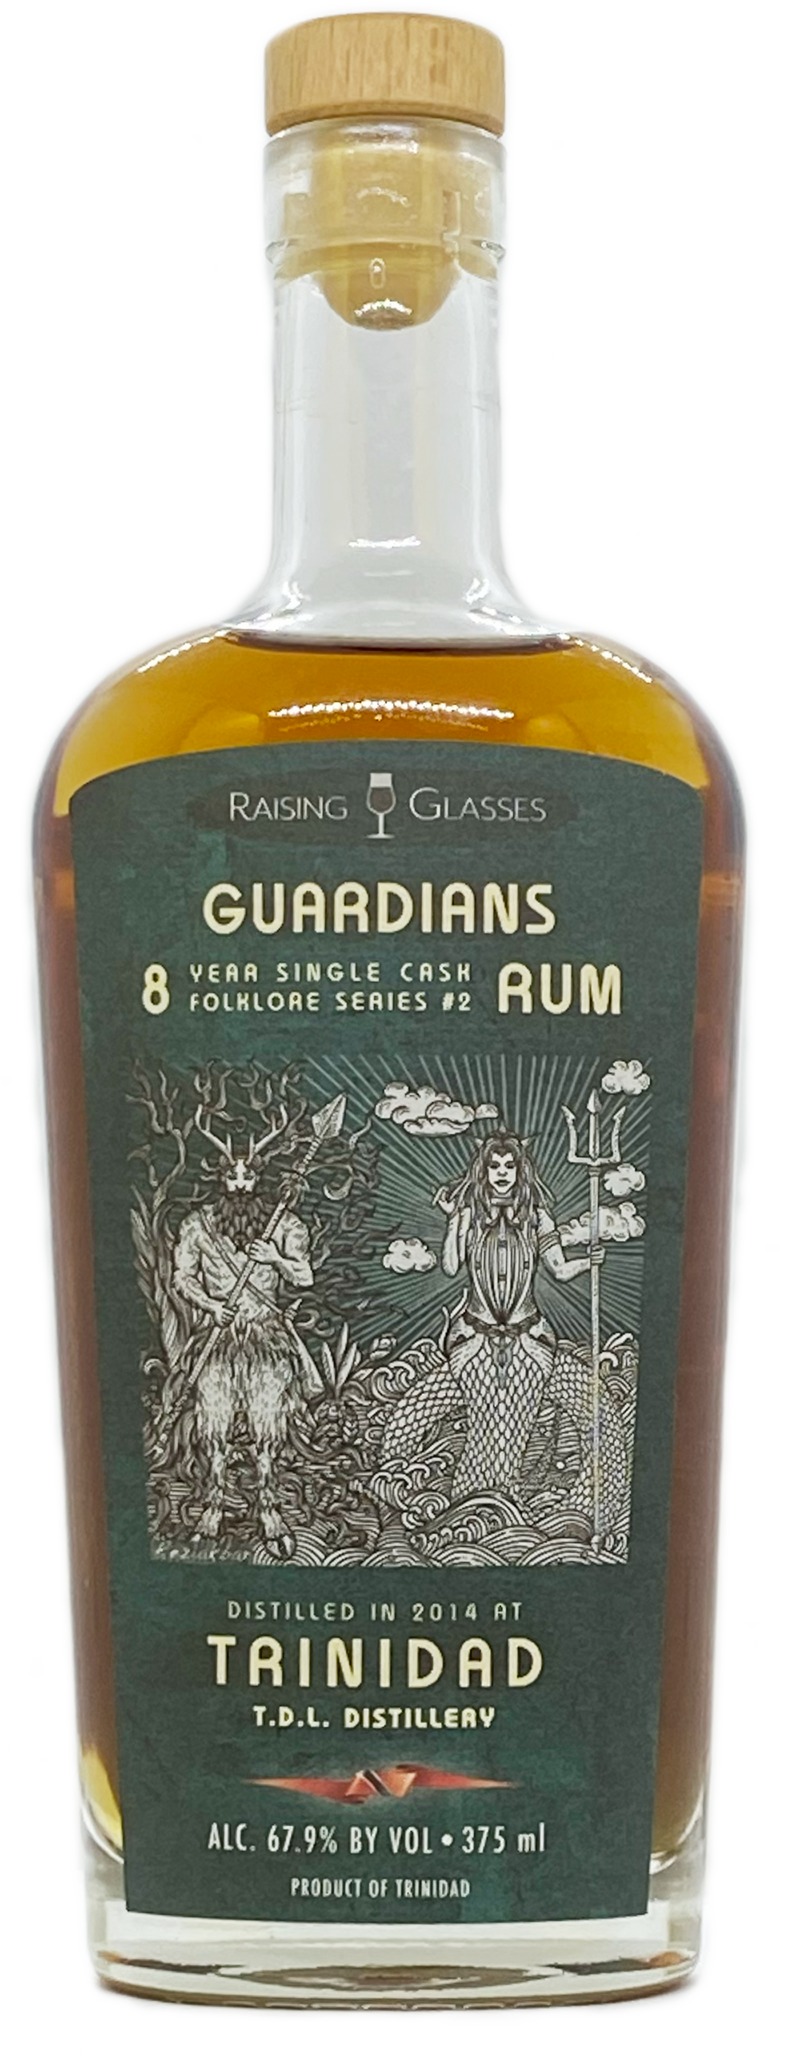 Guardians 8Yr. Single Cask Trinidad Rum - Raising Glasses